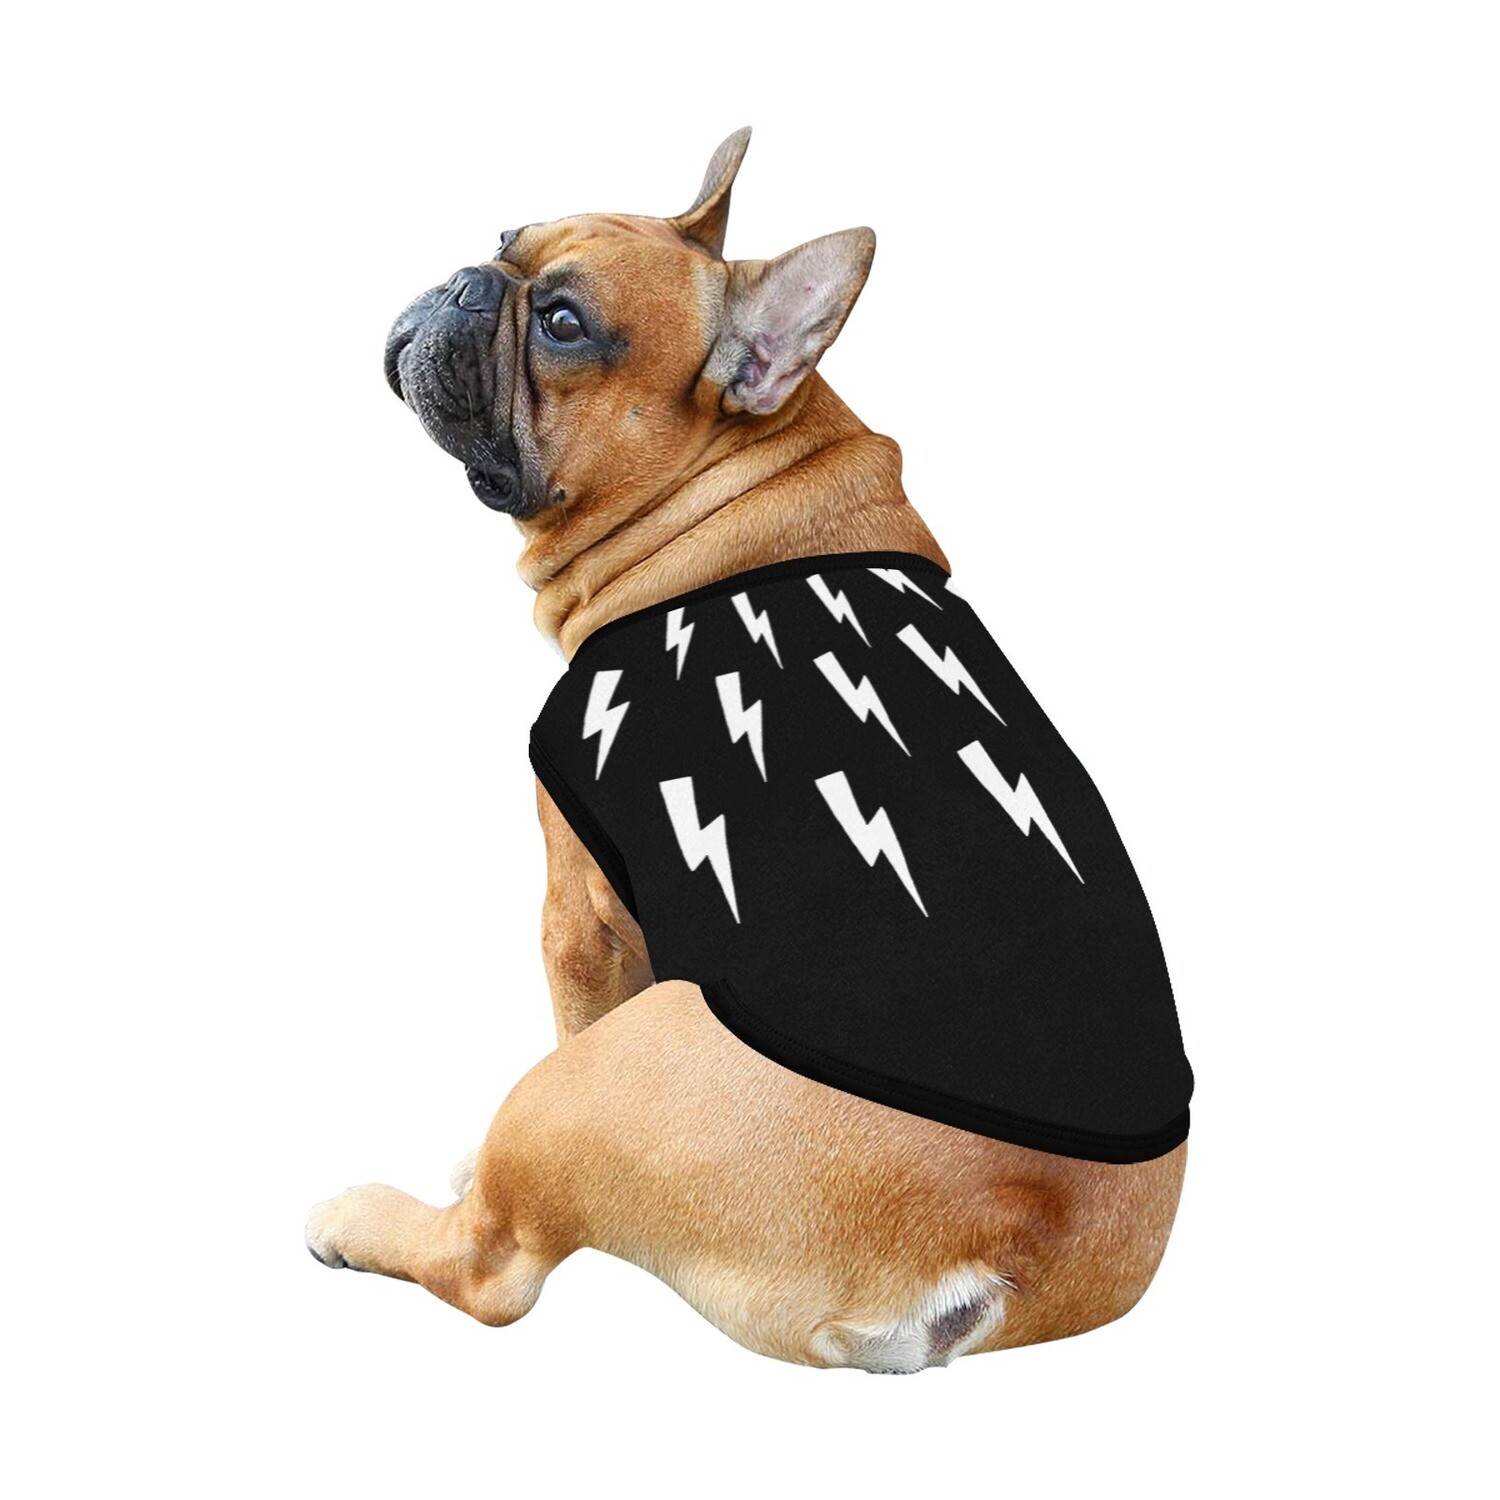 🐕⚡️Dog shirt Lightning bolts, Thunder, dog tank top, dog t-shirt, dog clothes, dog clothing, Gift, 7 sizes XS to 3XL, dog gift